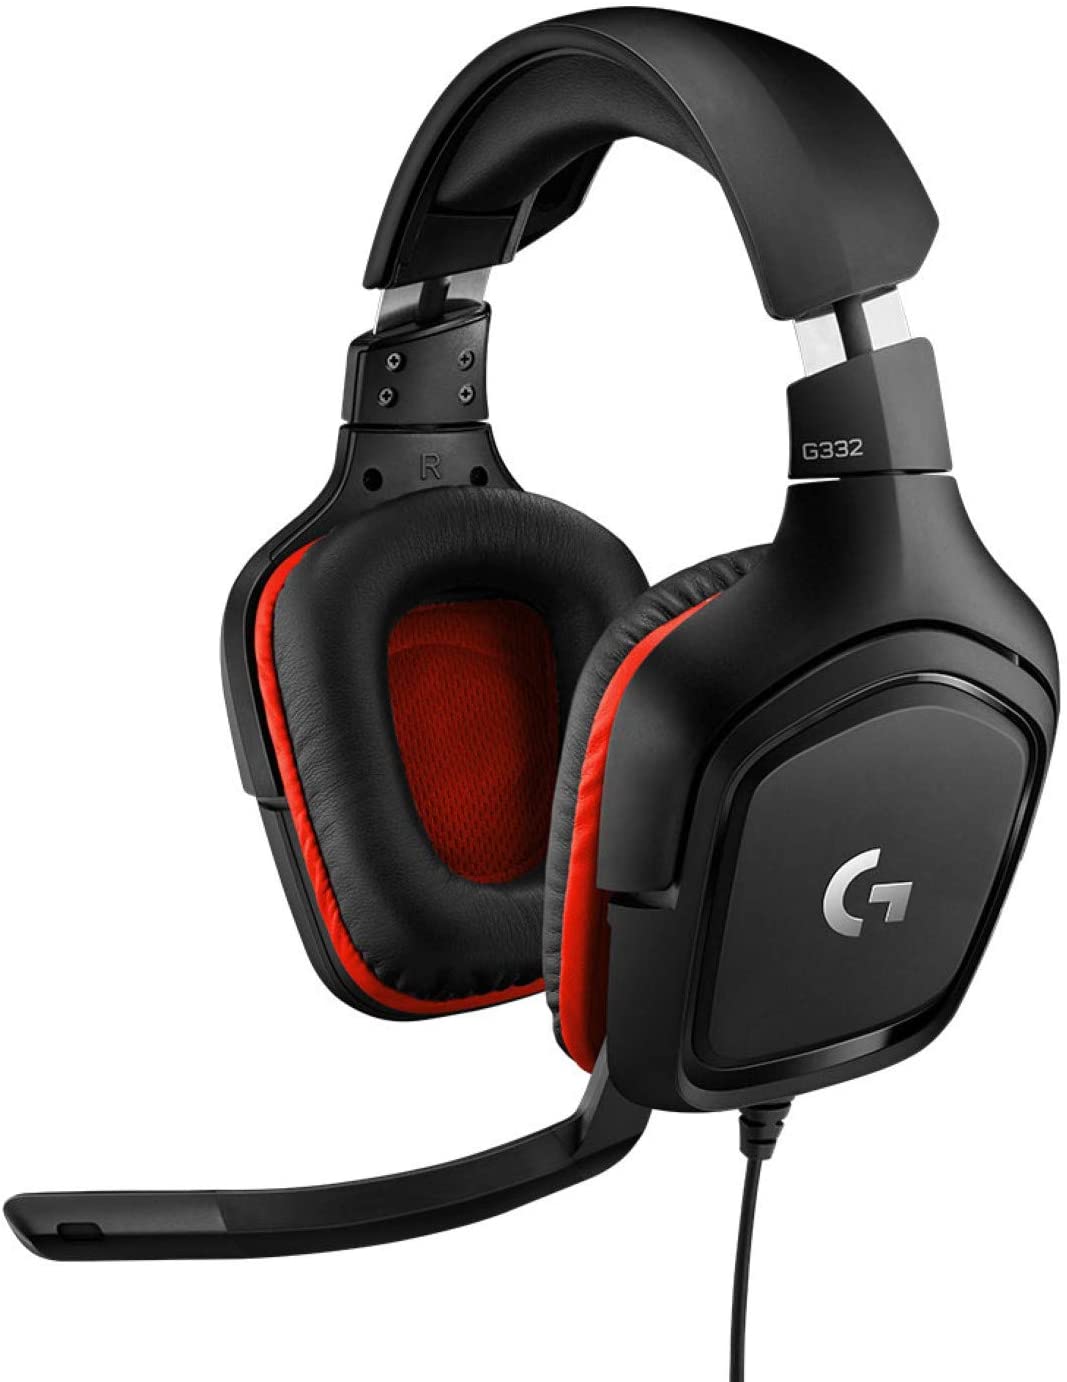 (G1) Logitech G332 kabelgebundenes Gaming-Headset rot schwarz